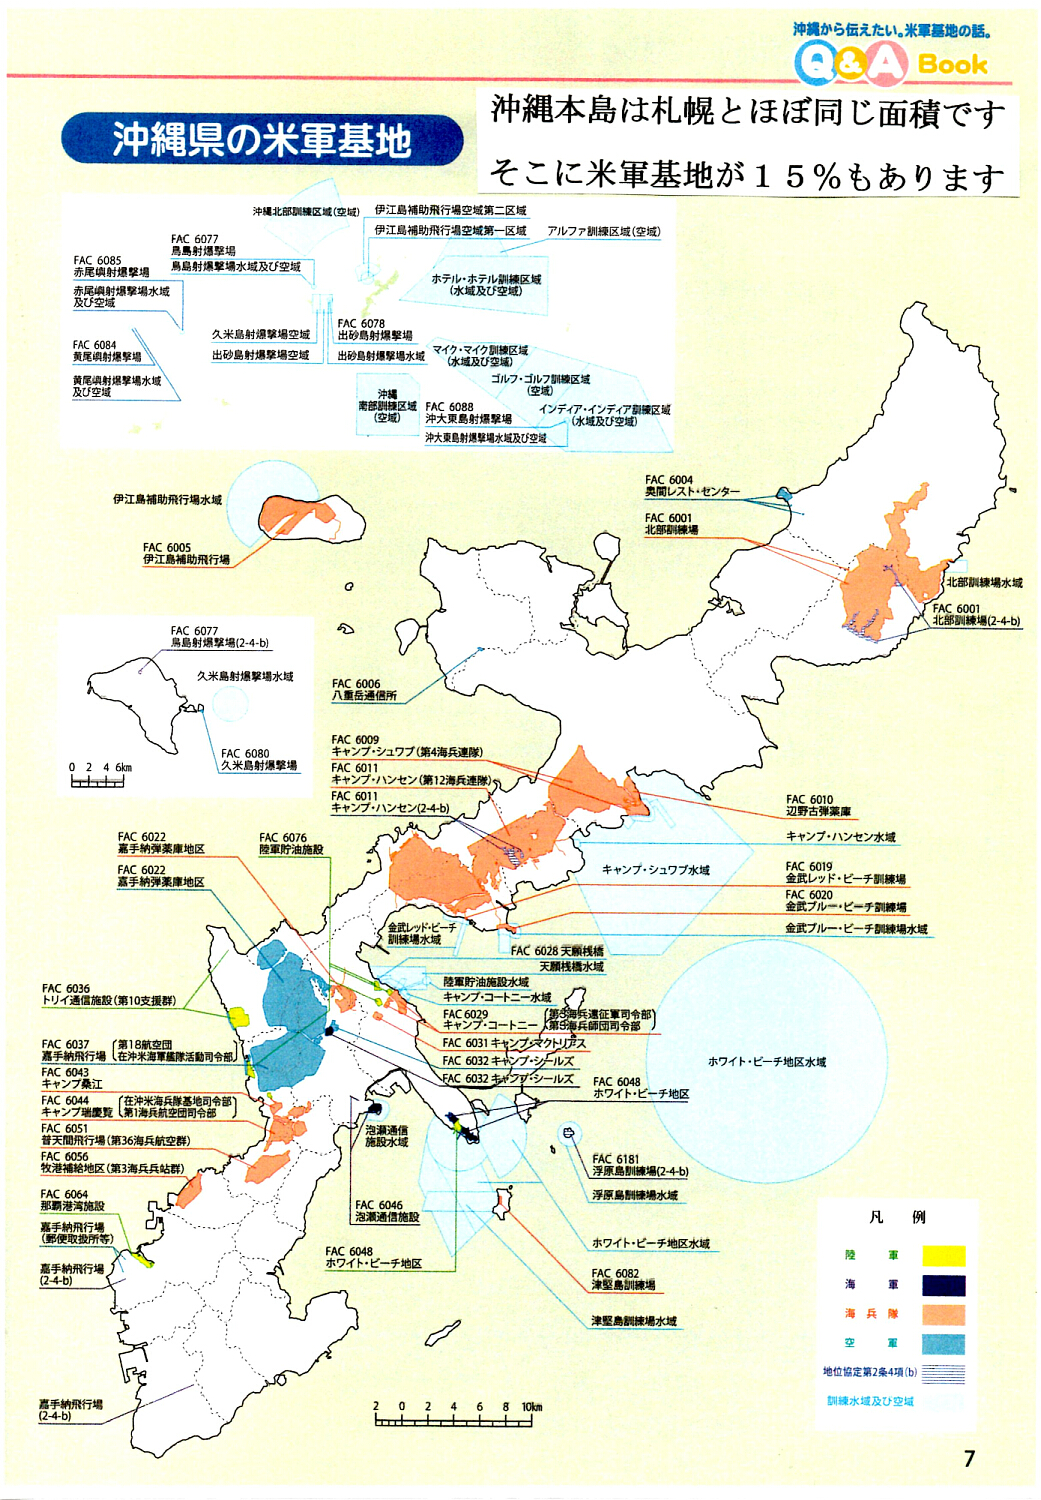 沖縄本島 札幌 面積ほぼ同じ 札幌の15 が米軍基地だとしたら